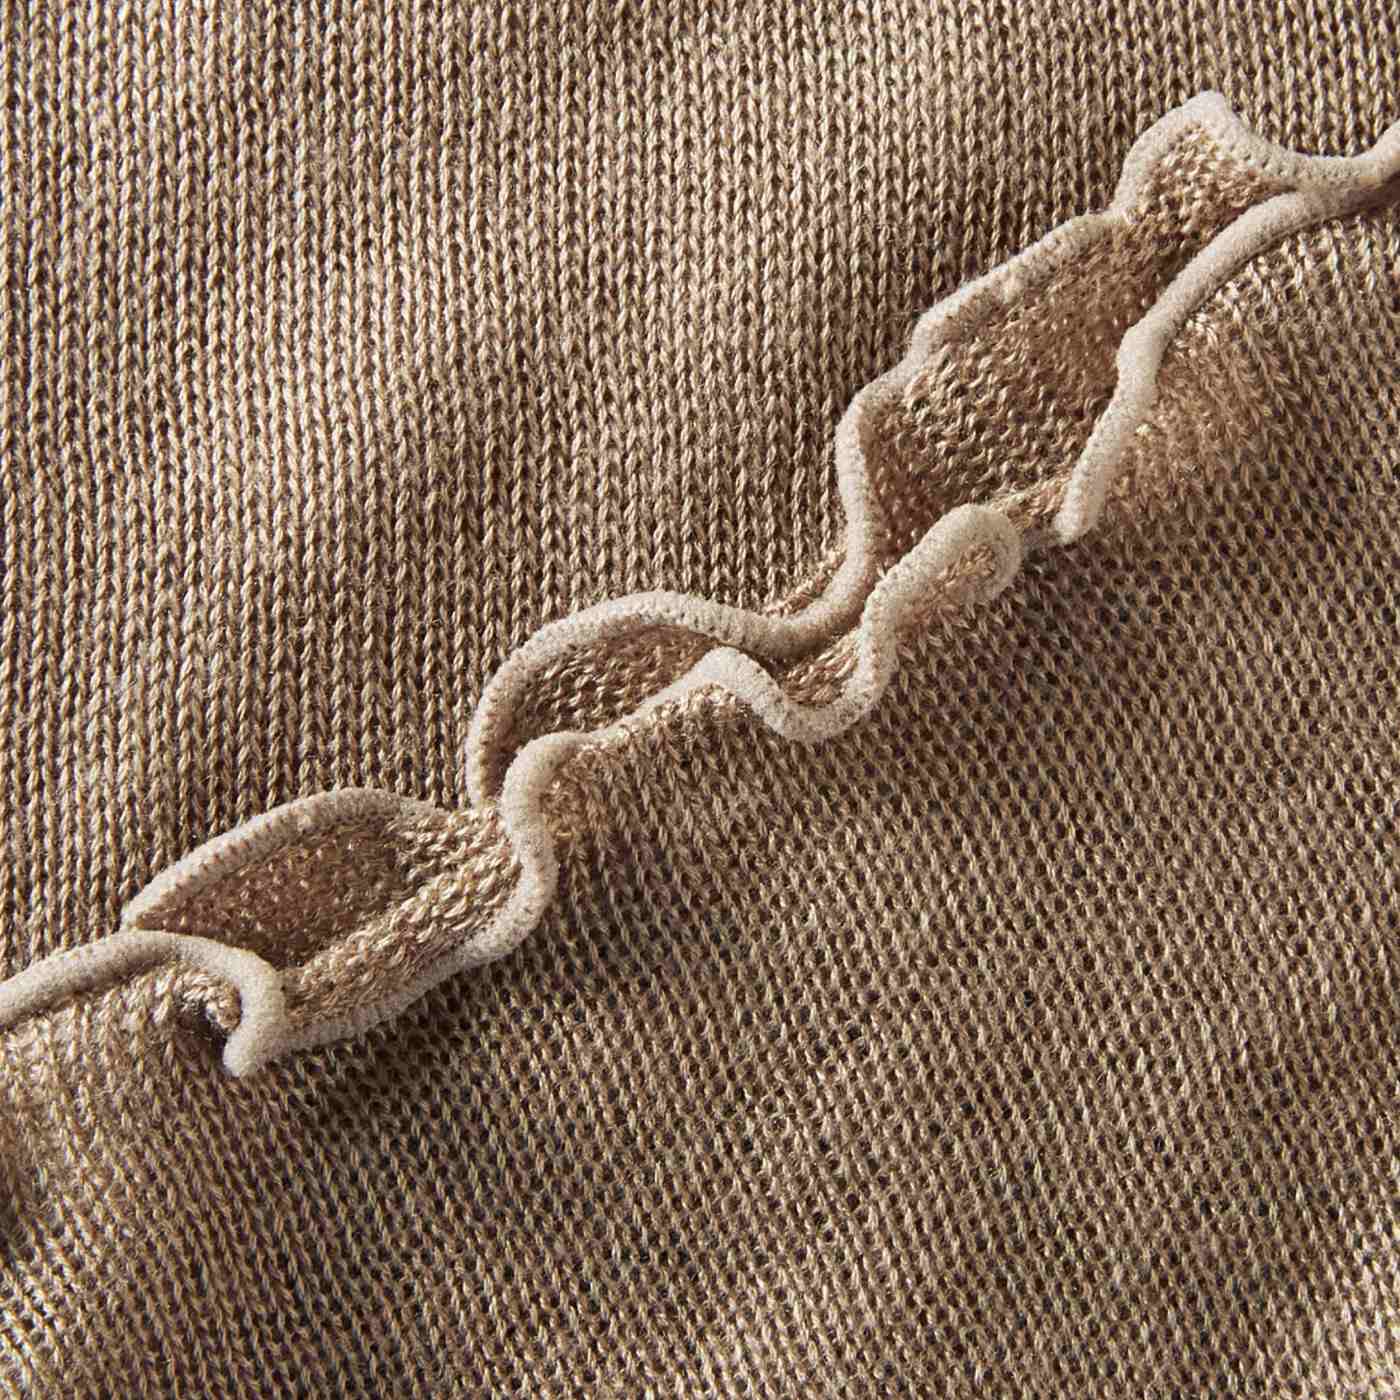 フェリシモの雑貨 Kraso|肌にとろける心地よさ　起毛シルクで編み立てたネックウォーマーの会|熟練の職人の技術で起毛をかけた上質なシルク糸の風合いを生かし、ふんわり編み立てました。